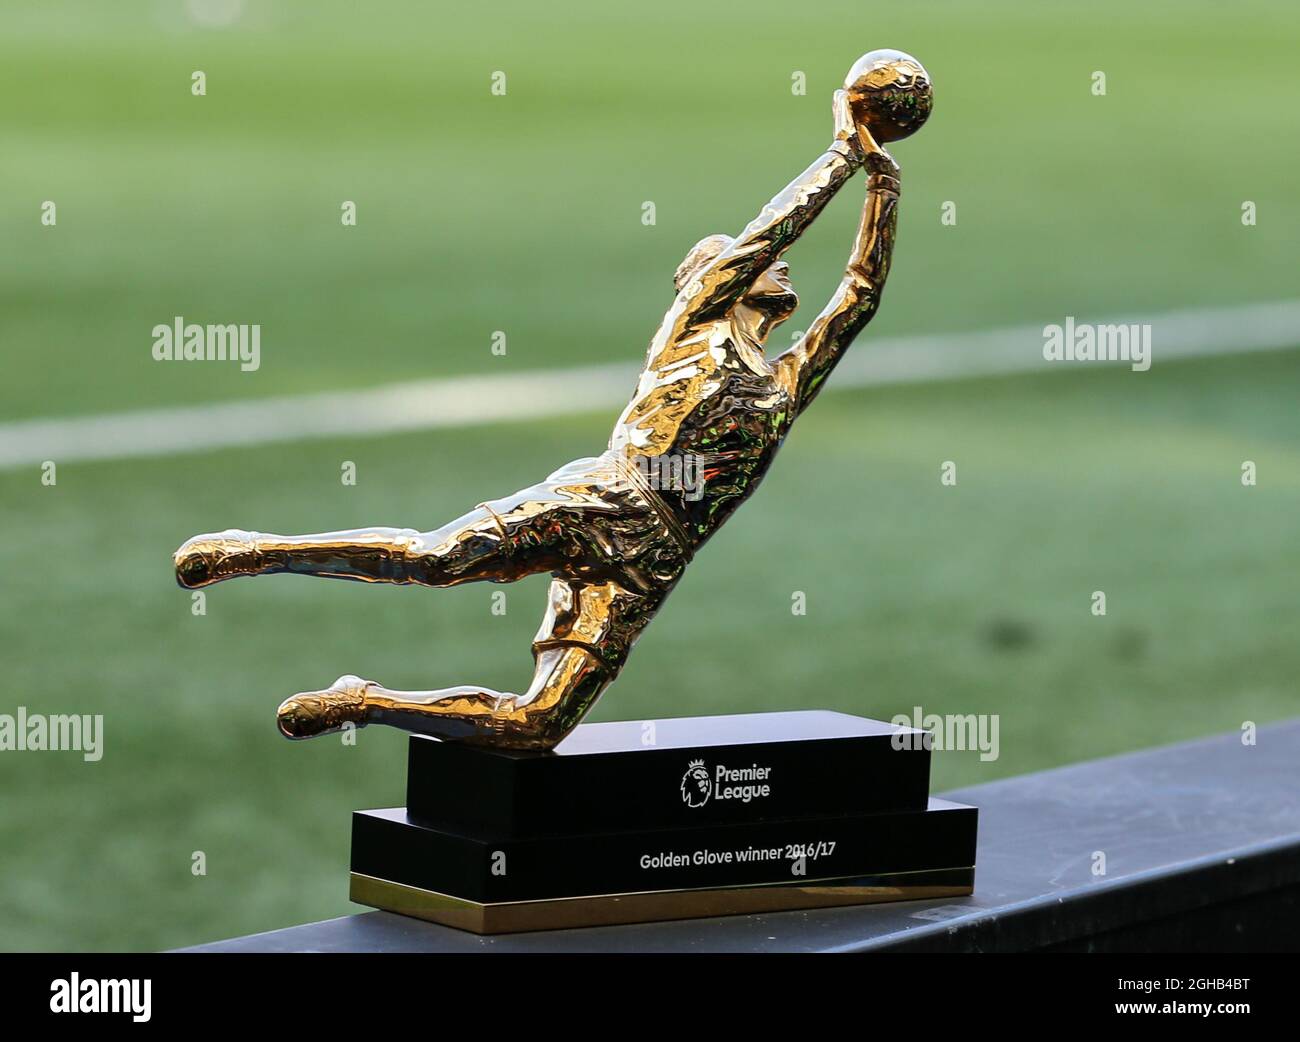 Trophée gant d'or de la Premier League lors du match de la Premier League  au stade Stamford Bridge, Londres. Date de la photo : 18 mai 2017. Le  crédit PIC devrait se